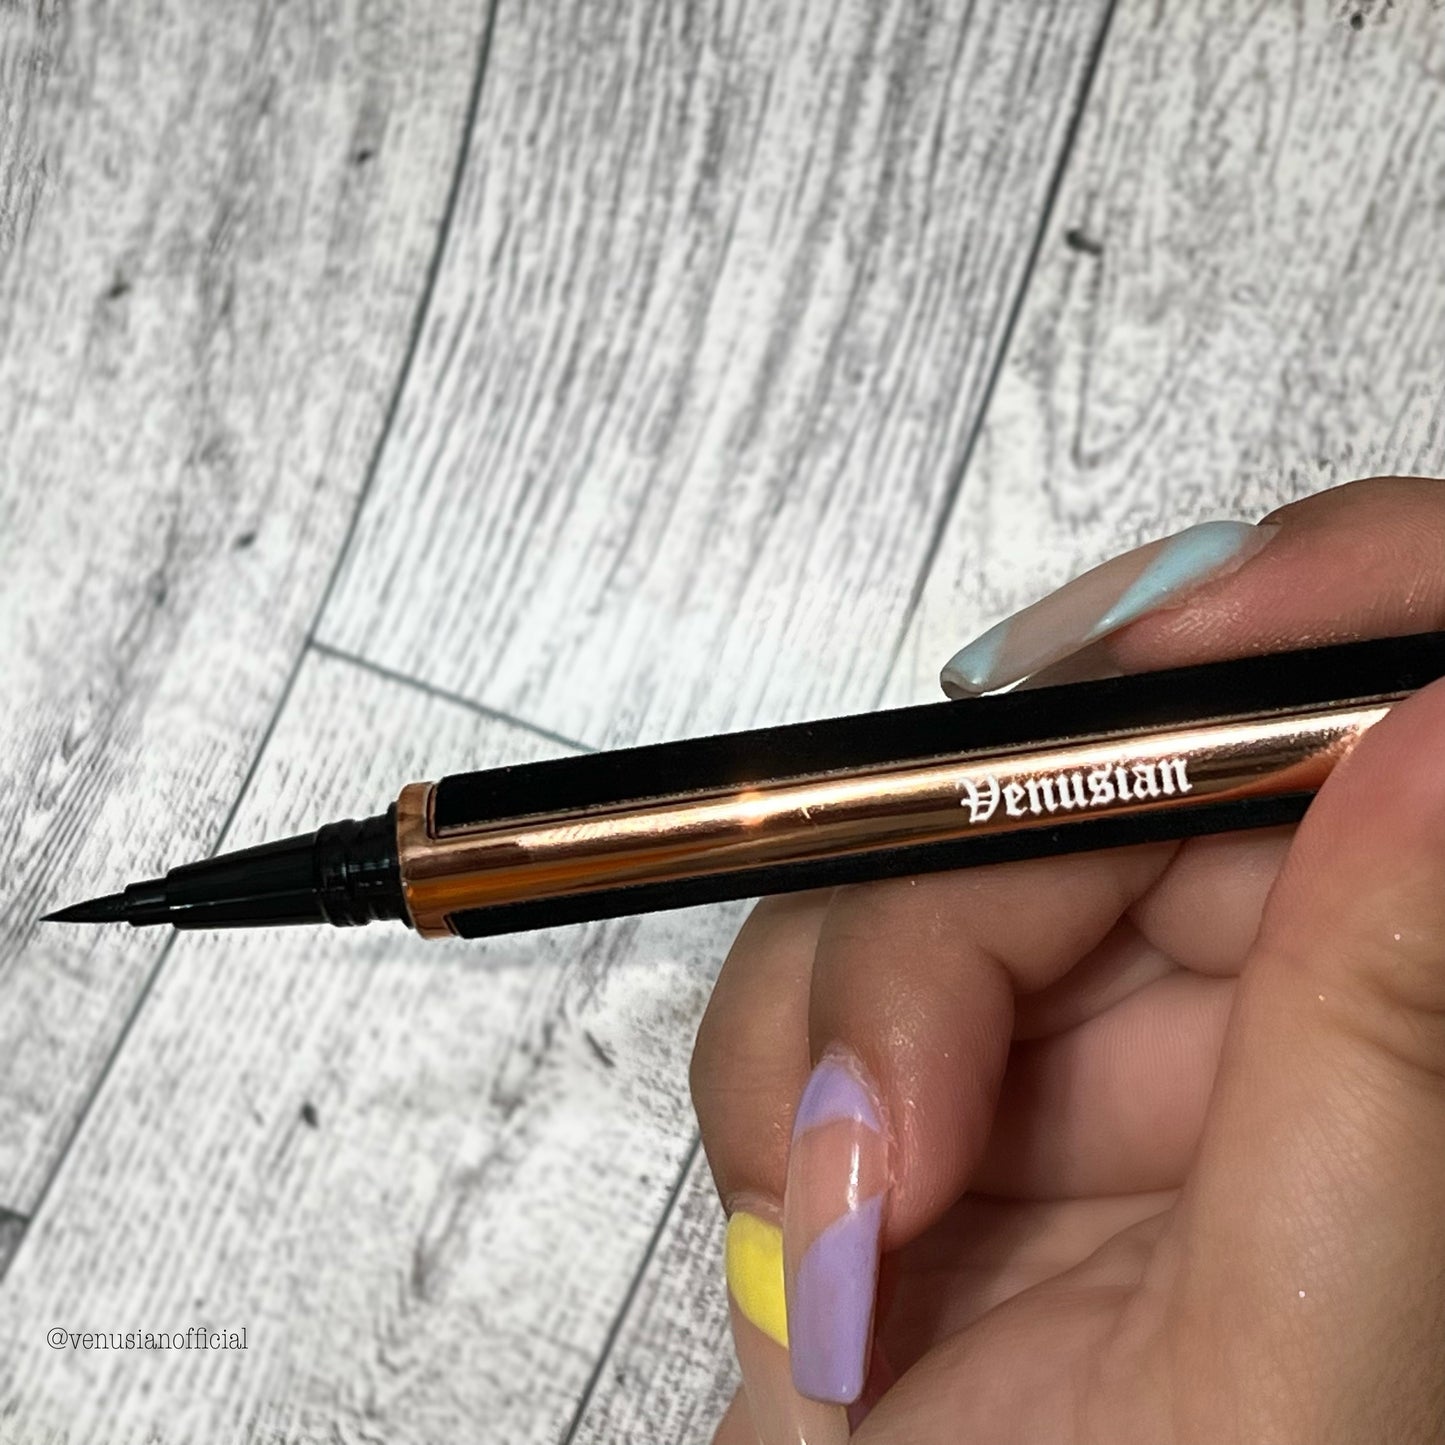 Eyeliner Glue Pen